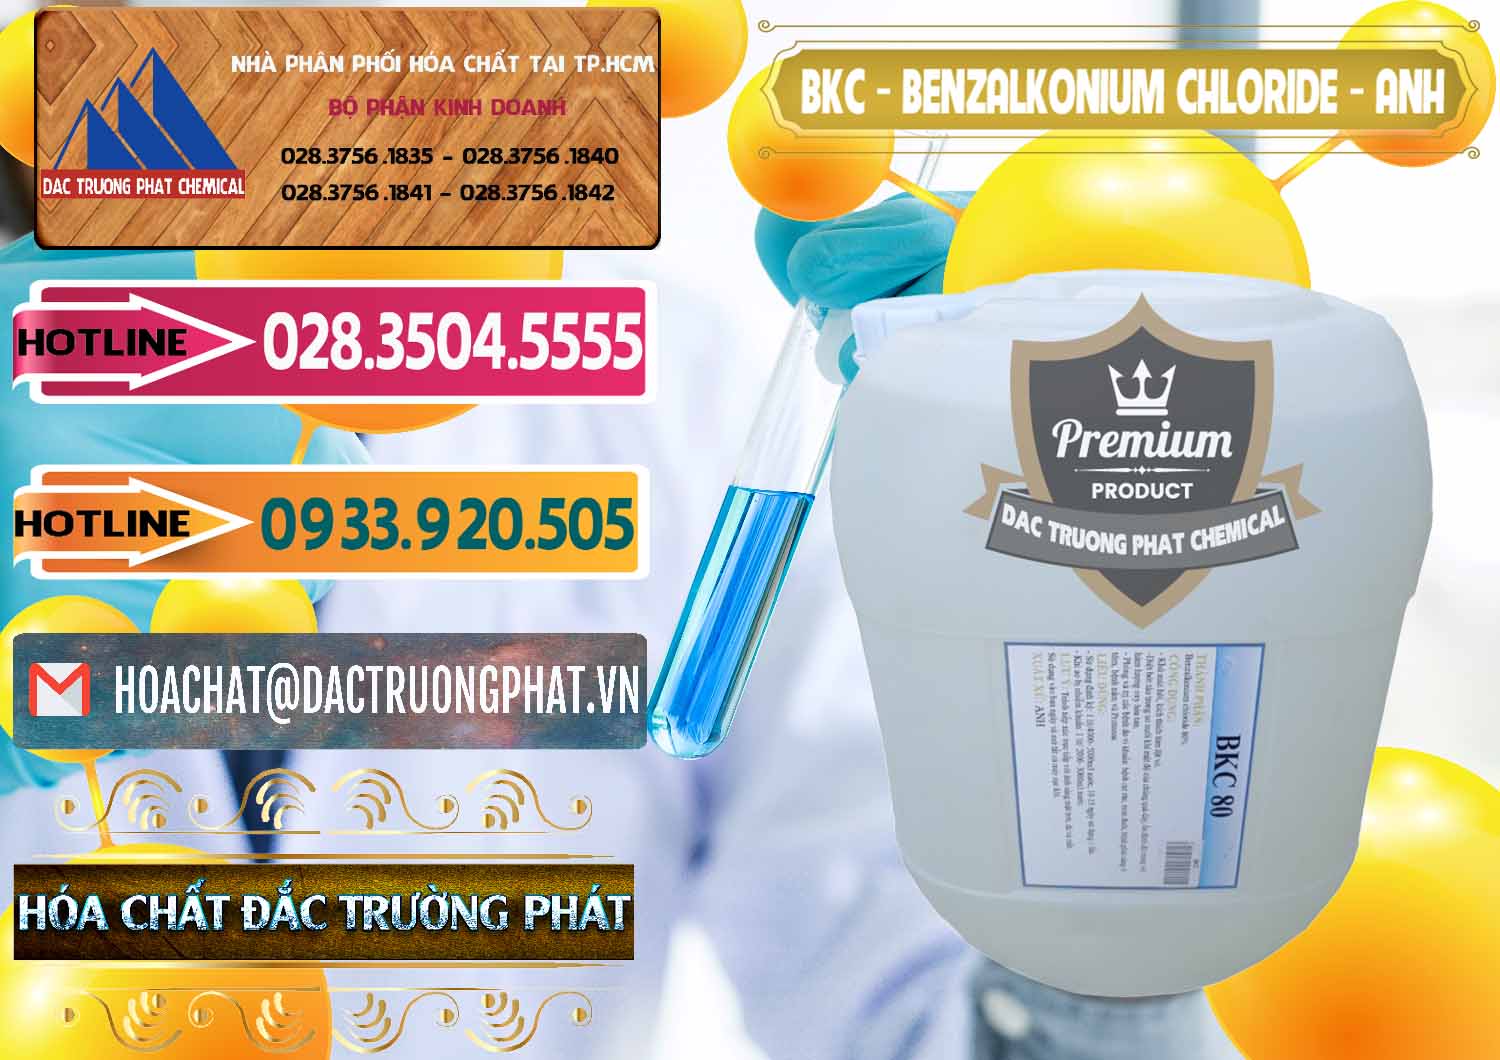 Cty bán và cung cấp BKC - Benzalkonium Chloride Anh Quốc Uk Kingdoms - 0415 - Chuyên cung ứng & phân phối hóa chất tại TP.HCM - dactruongphat.vn